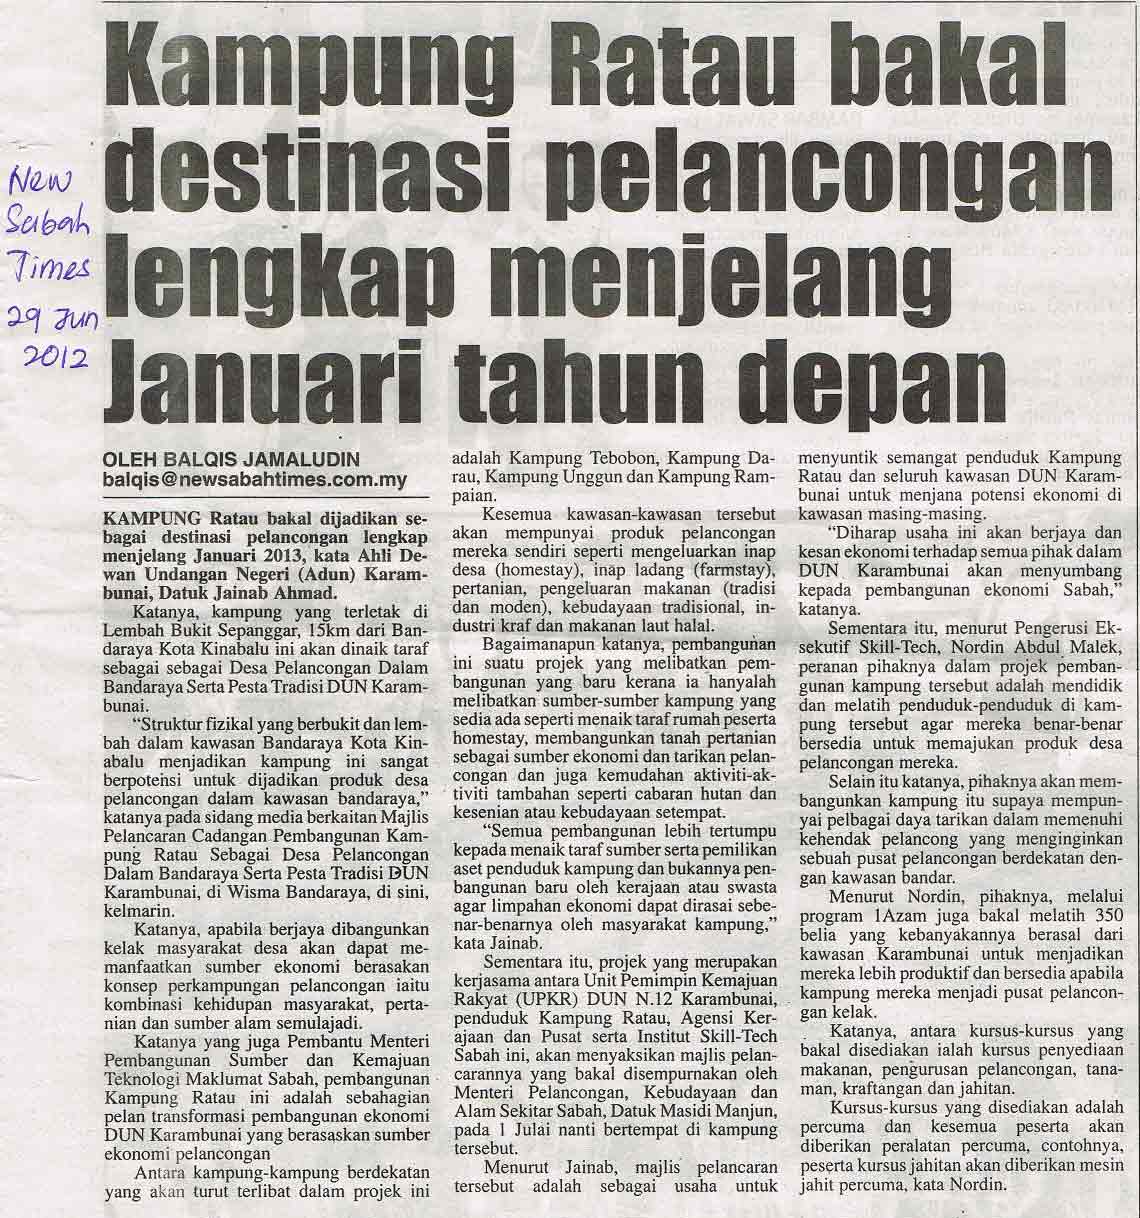 New Sabah Times- 29 Jun 2012